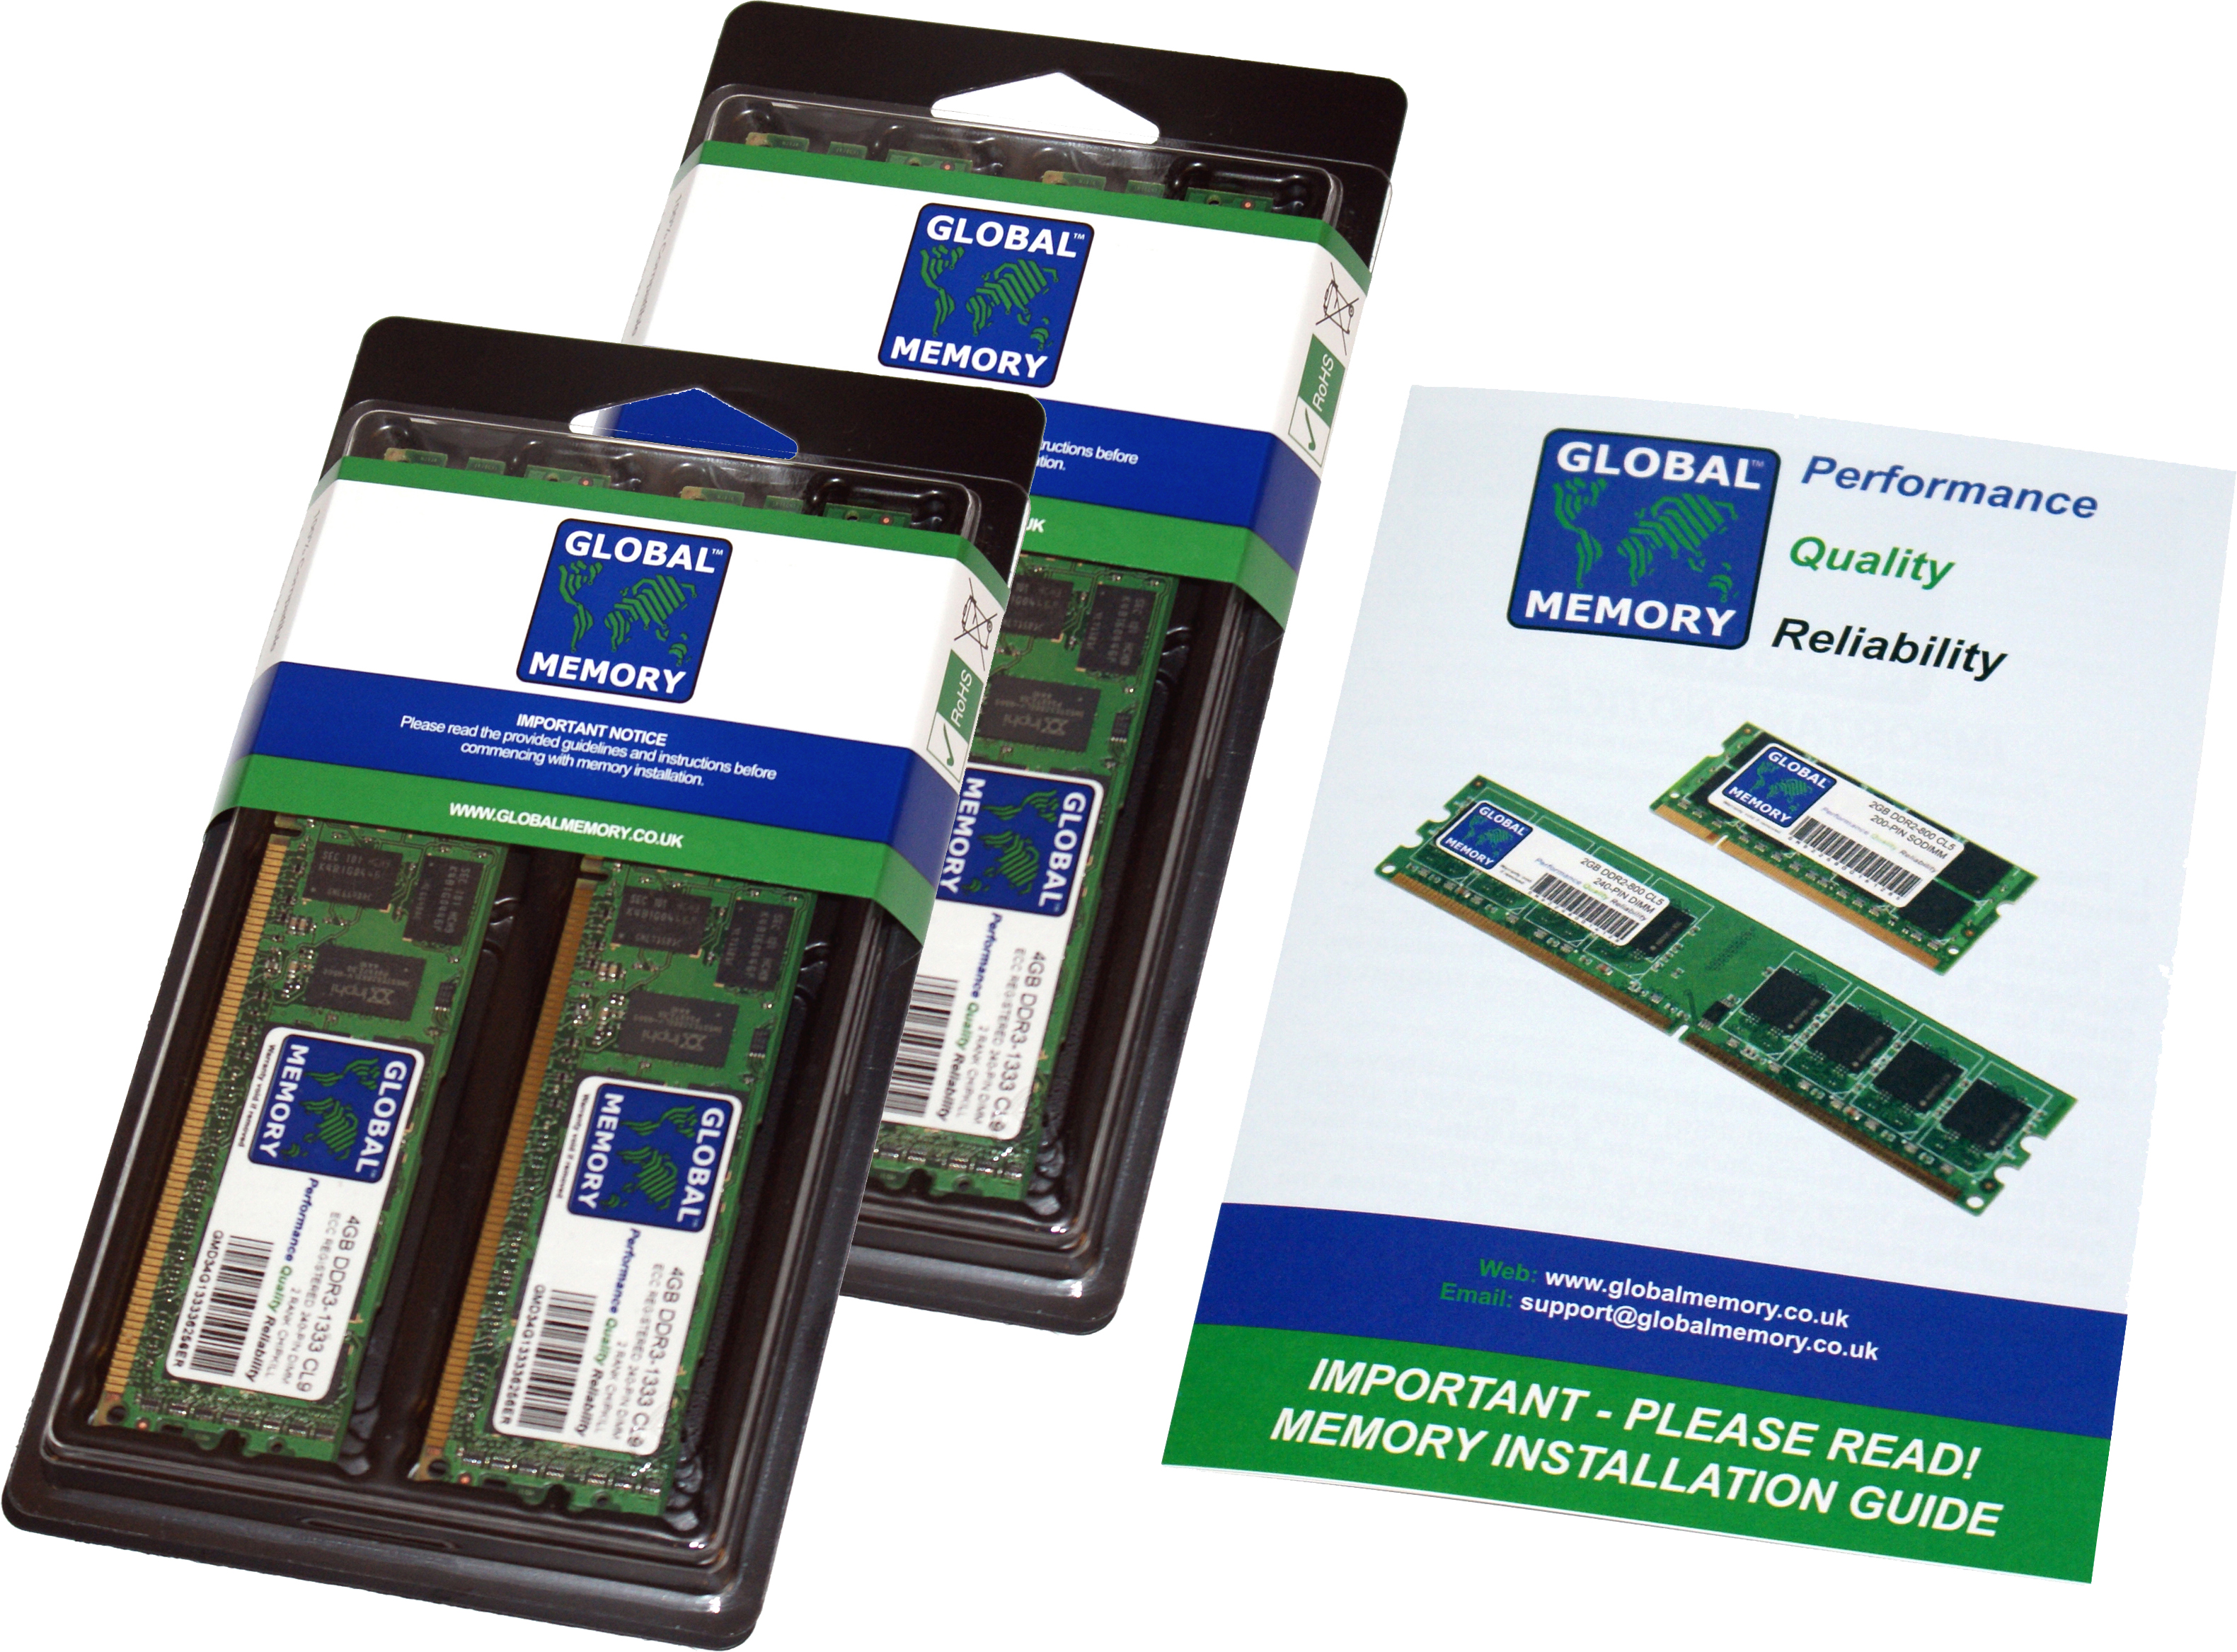 64GB (2 x 32GB) DDR4 2400MHz PC4-19200 288-PIN ECC REGISTERED DIMM (RDIMM) MEMORY RAM KIT FOR HEWLETT-PACKARD SERVERS/WORKSTATIONS (4 RANK KIT CHIPKILL)